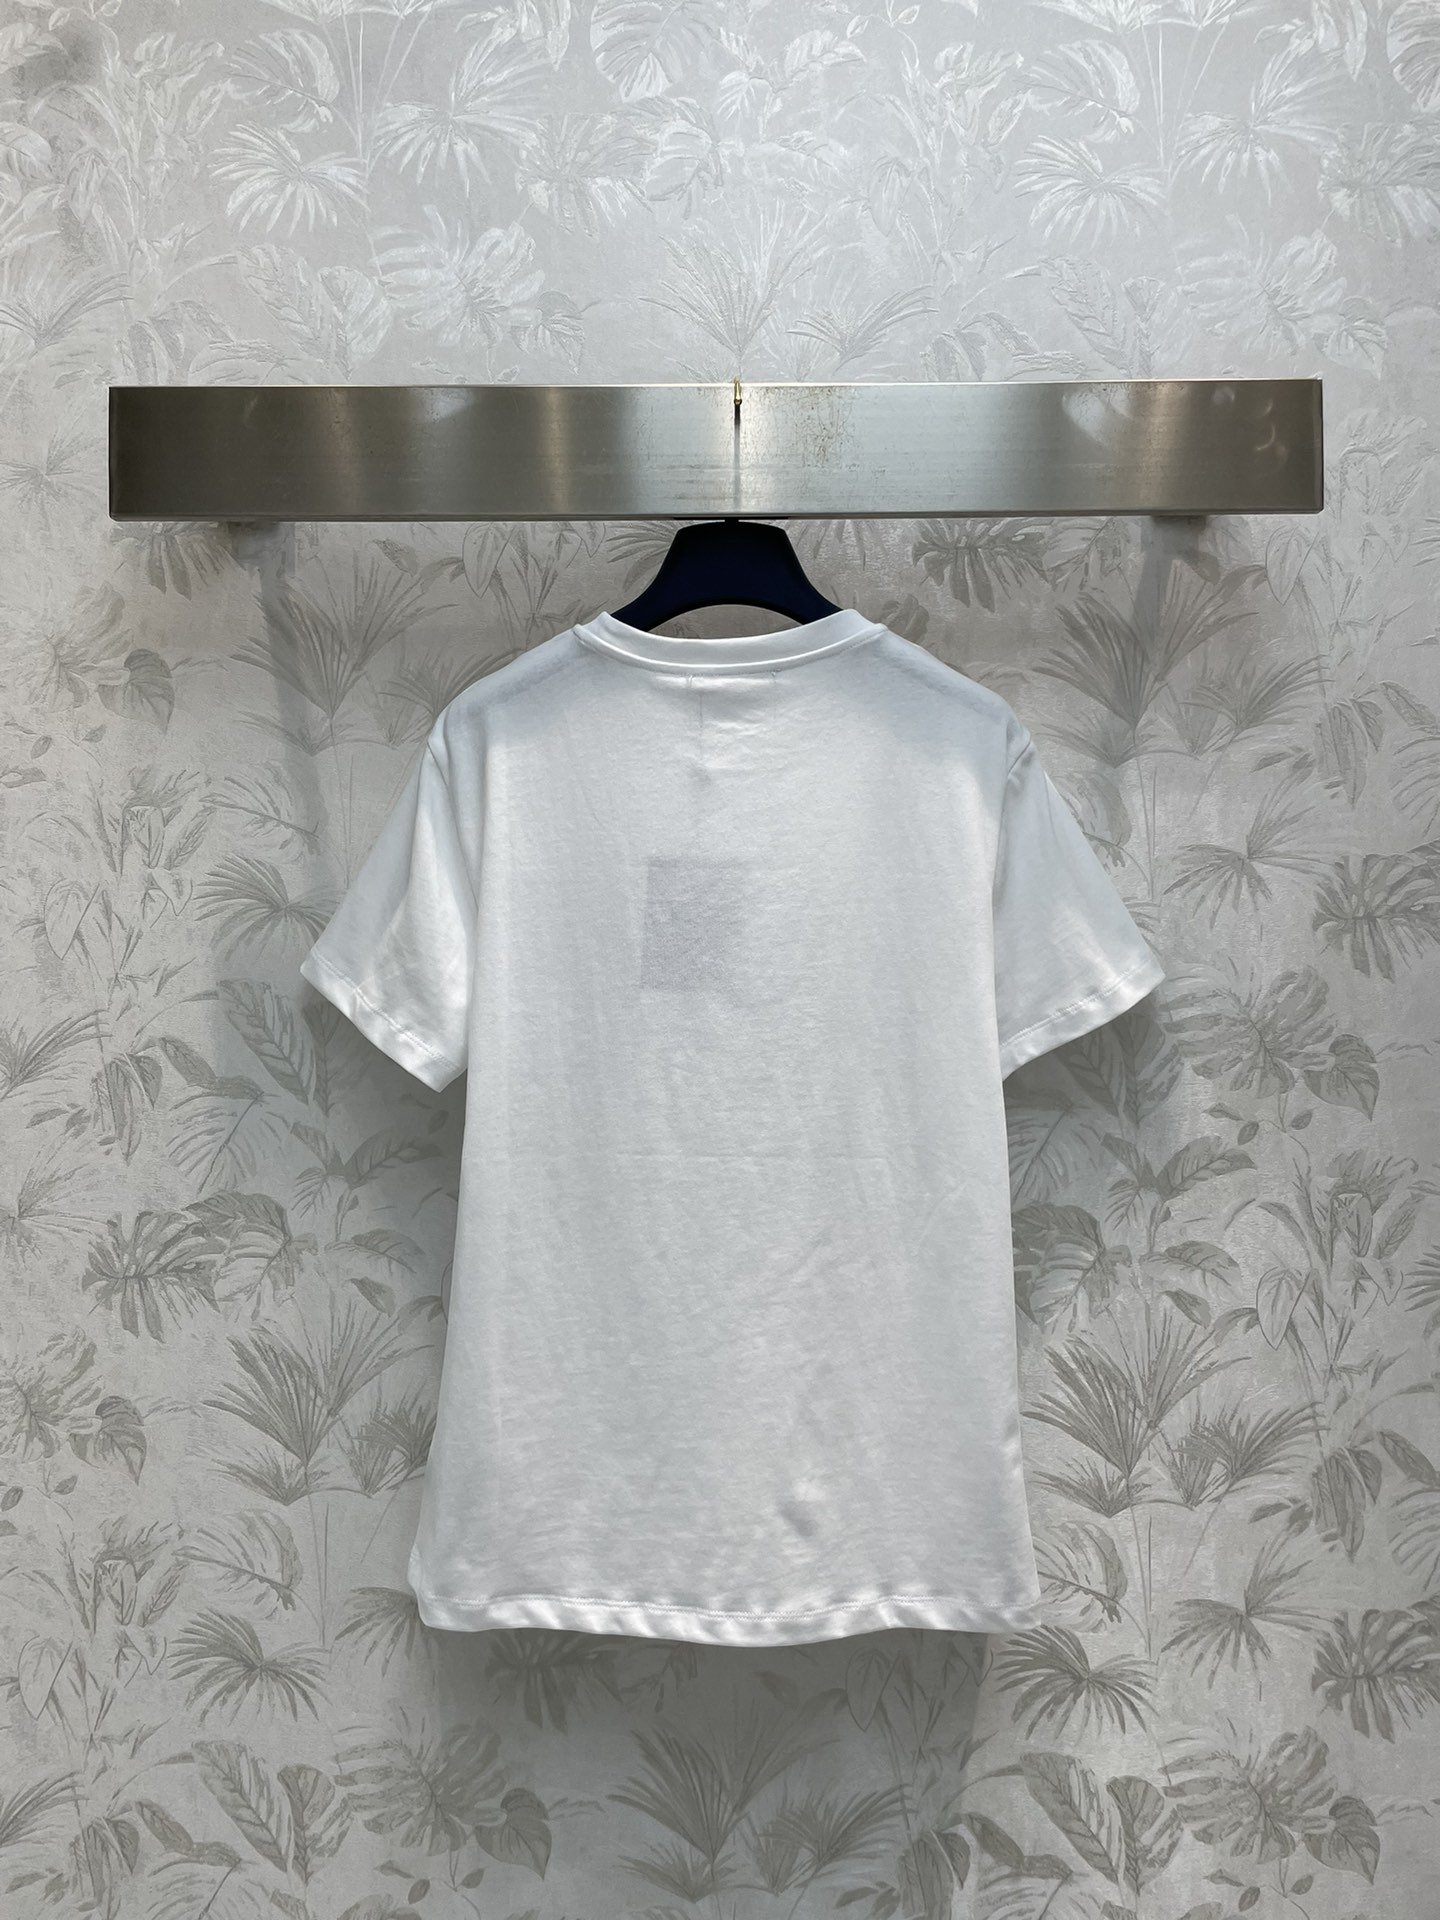 L家24春夏航海系列印花T恤日常巨实穿又百搭的单品之一基础的经典版型吸睛的琏条撞色印花上身自带舒适松弛感